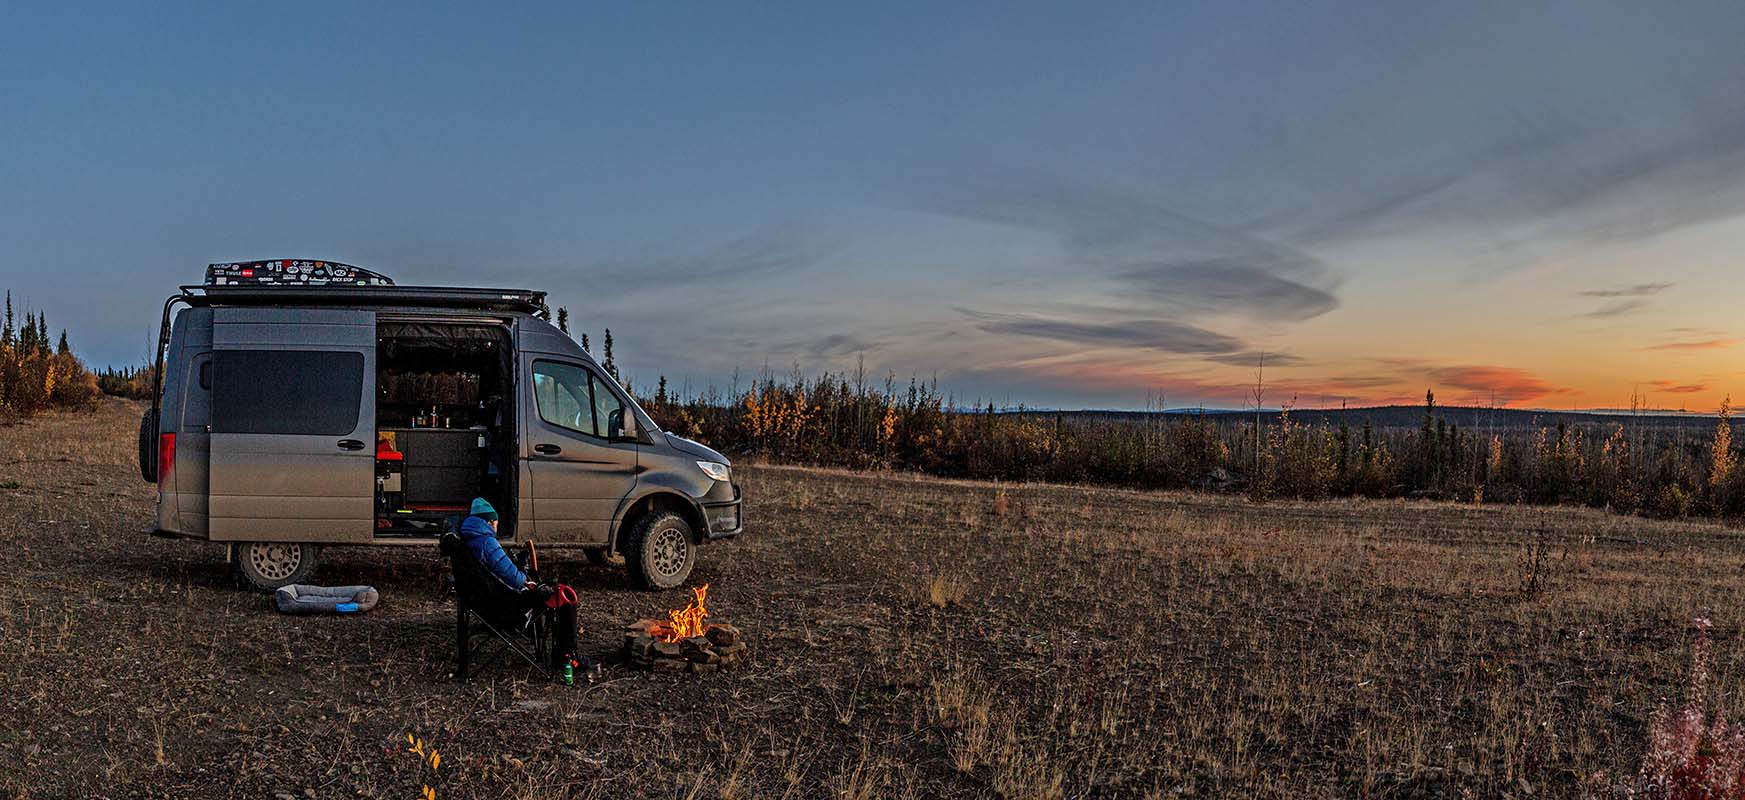 Camping beside Sprinter van on side of Dempster Highway (Northwest Territories)